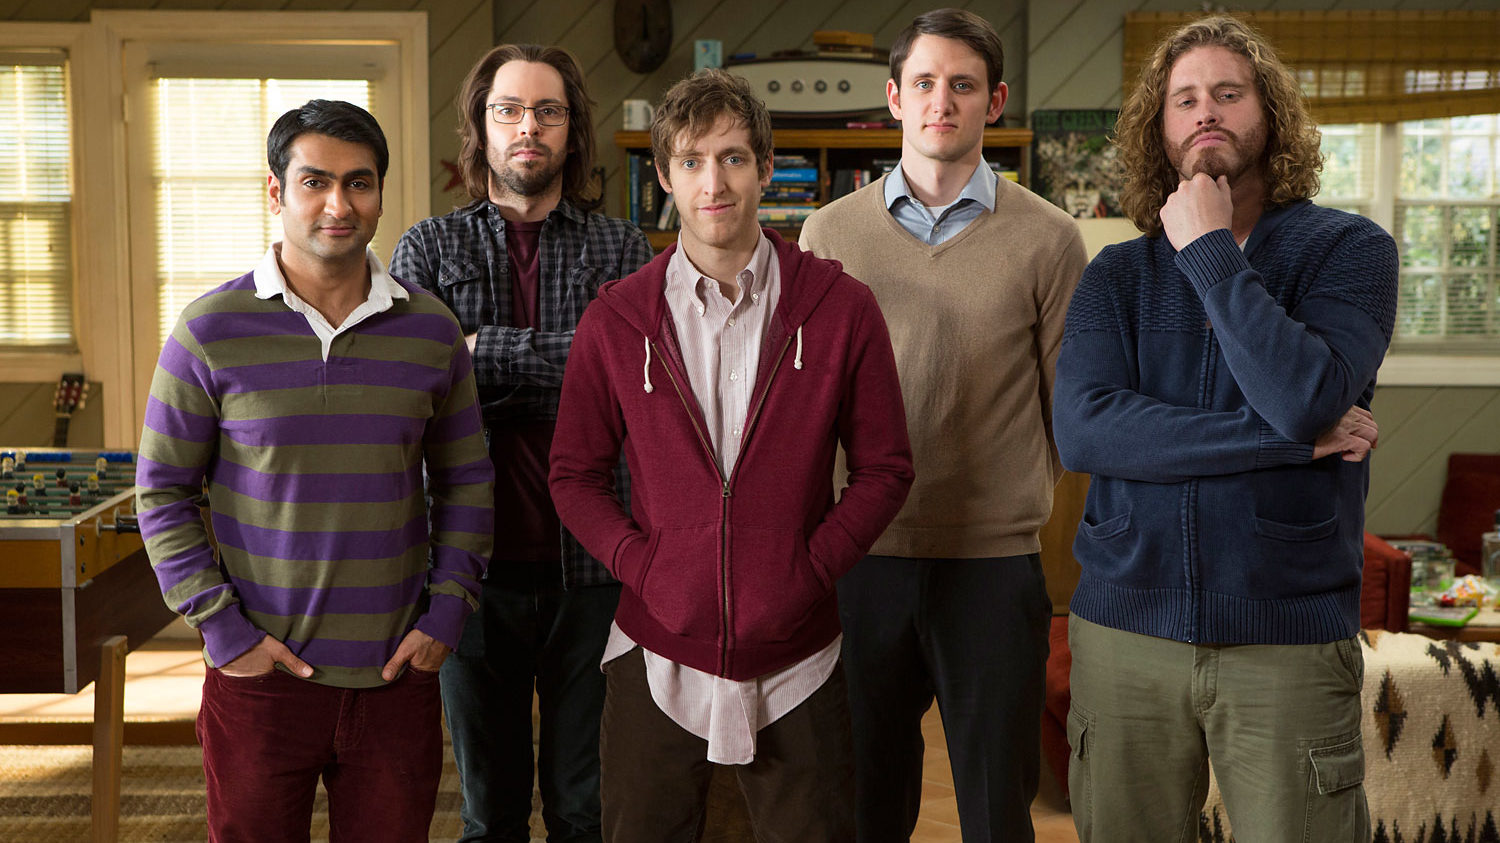 Temporada final de Silicon Valley ganha data de estreia e trailer